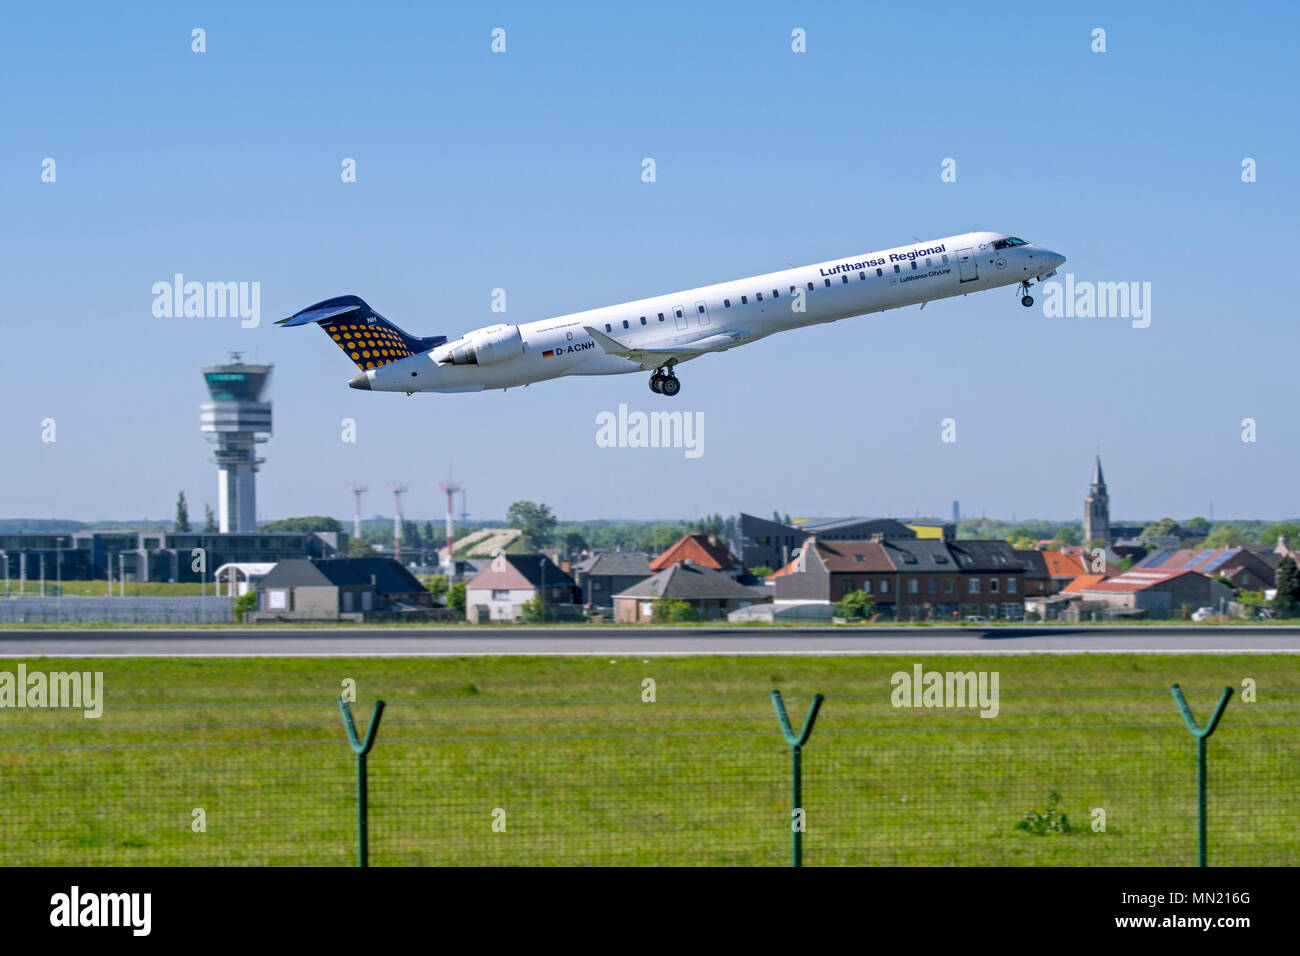 Bombardier CRJ-900LR, avion de ligne régional de Lufthansa CityLine, décoller de la piste à l'aéroport de Bruxelles, Zaventem, Belgique Banque D'Images